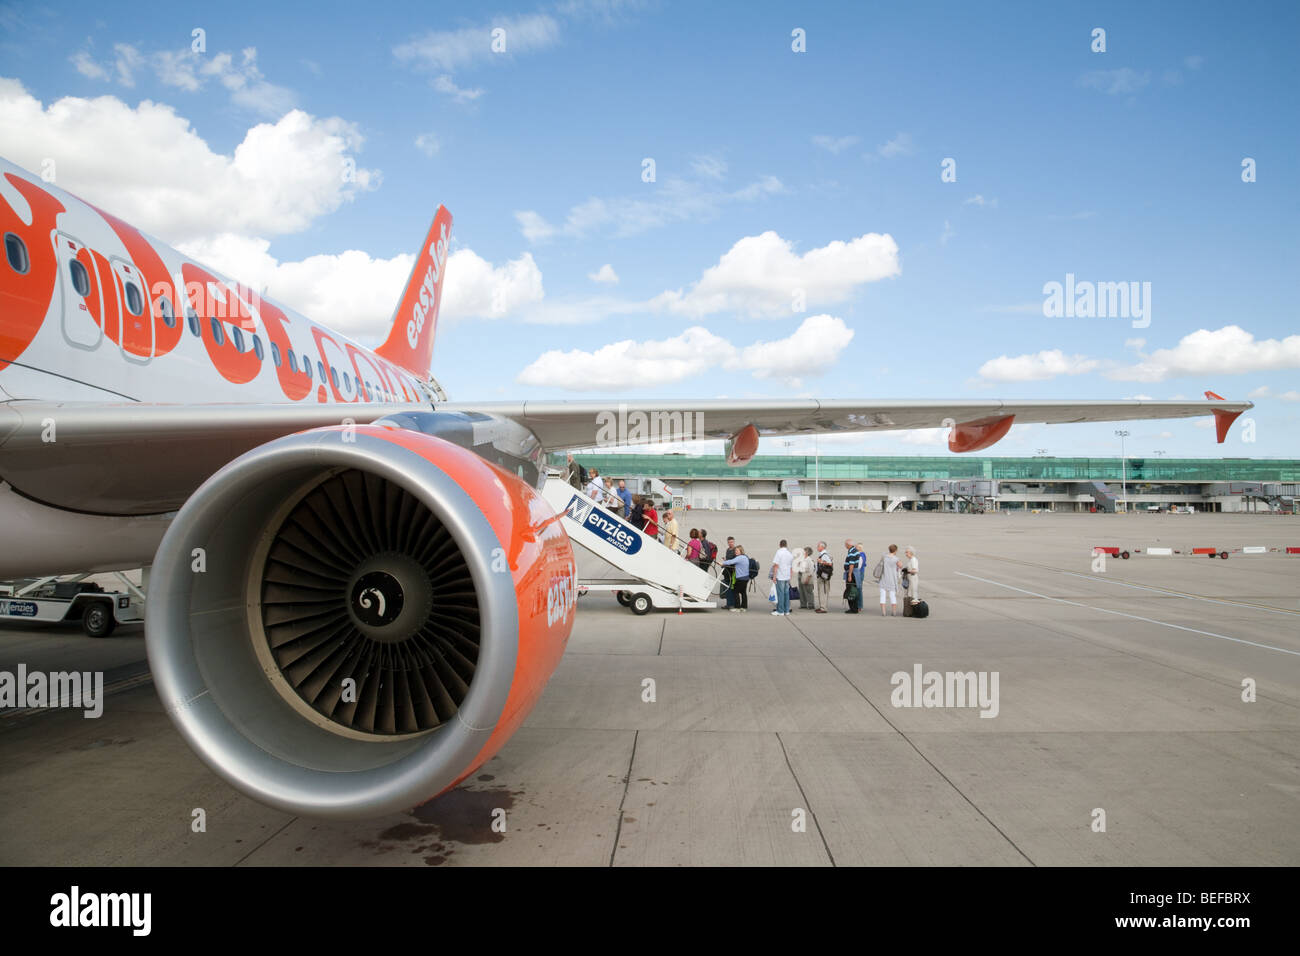 Les passagers d'un avion Easyjet à l'aéroport de Stansted, Royaume-Uni Banque D'Images